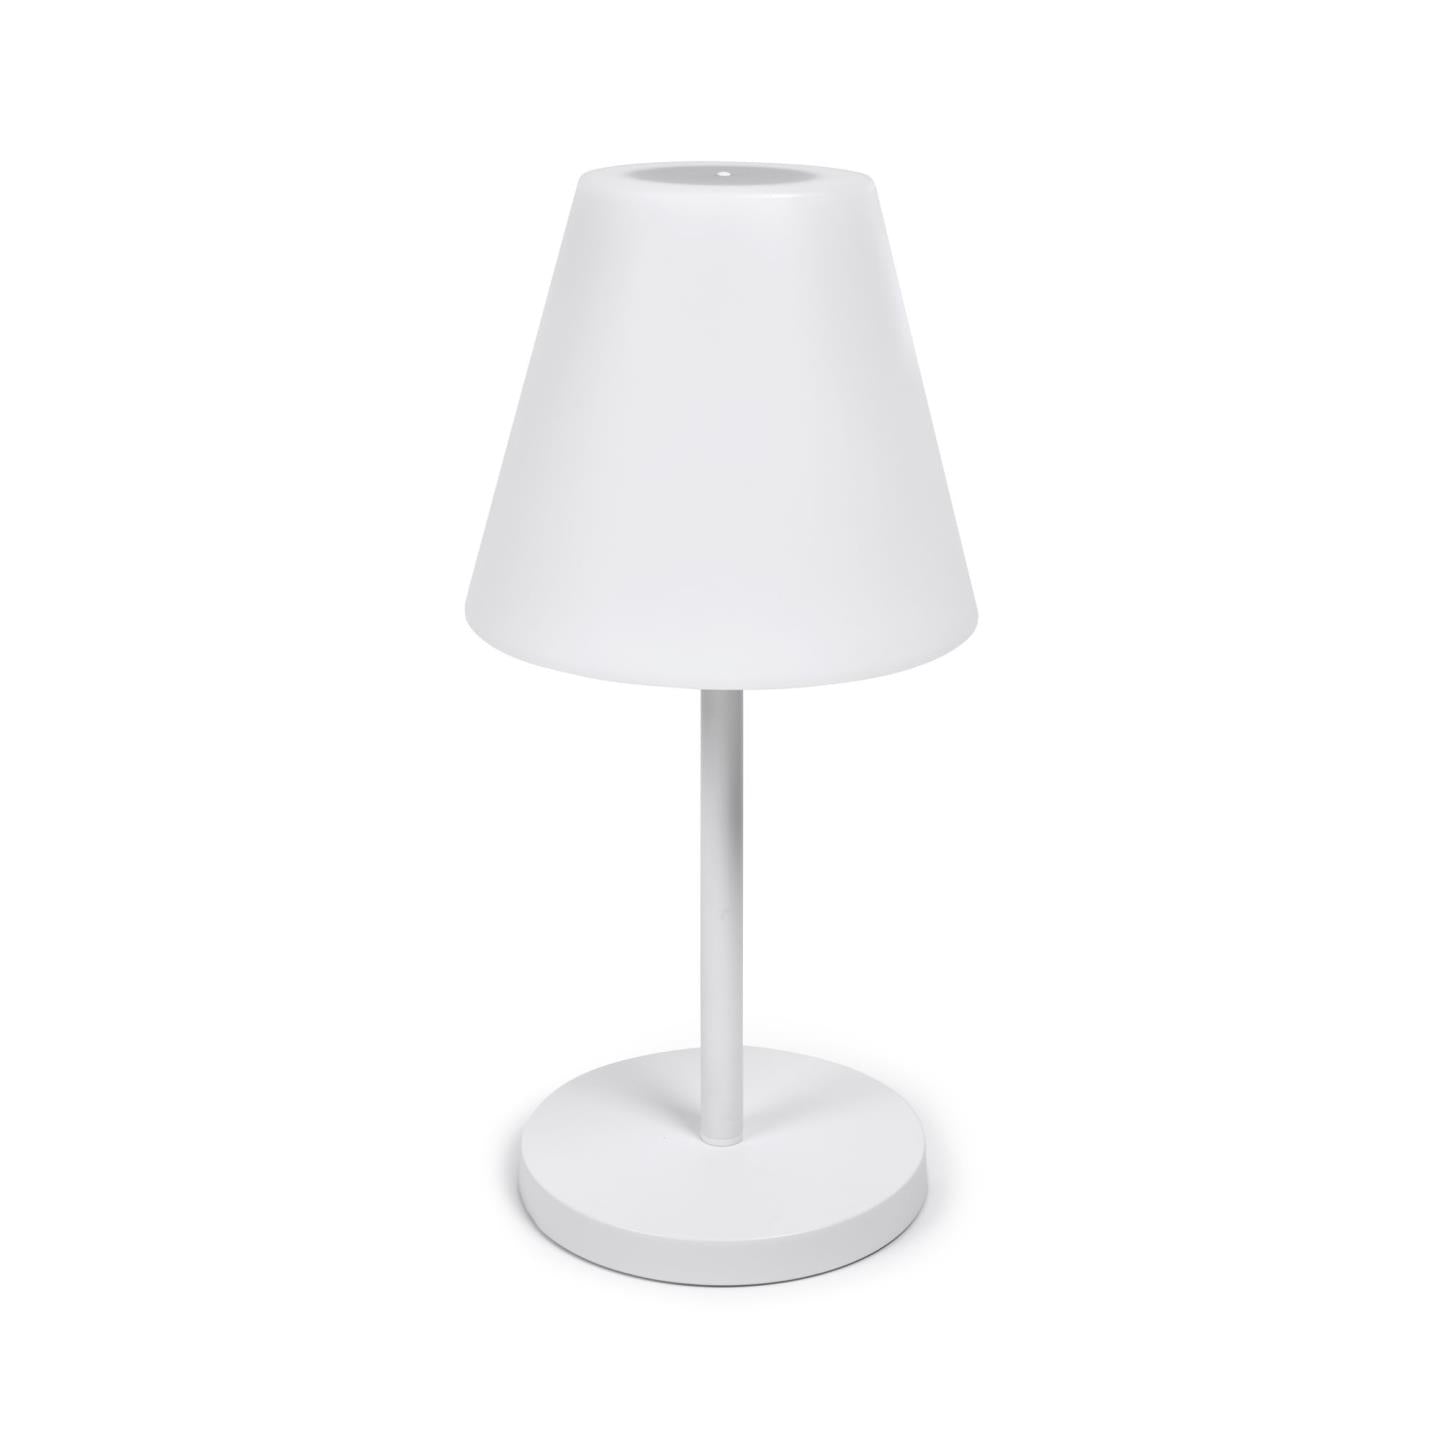 Amaray kültéri asztali lámpa acélból, fehér kivitelben